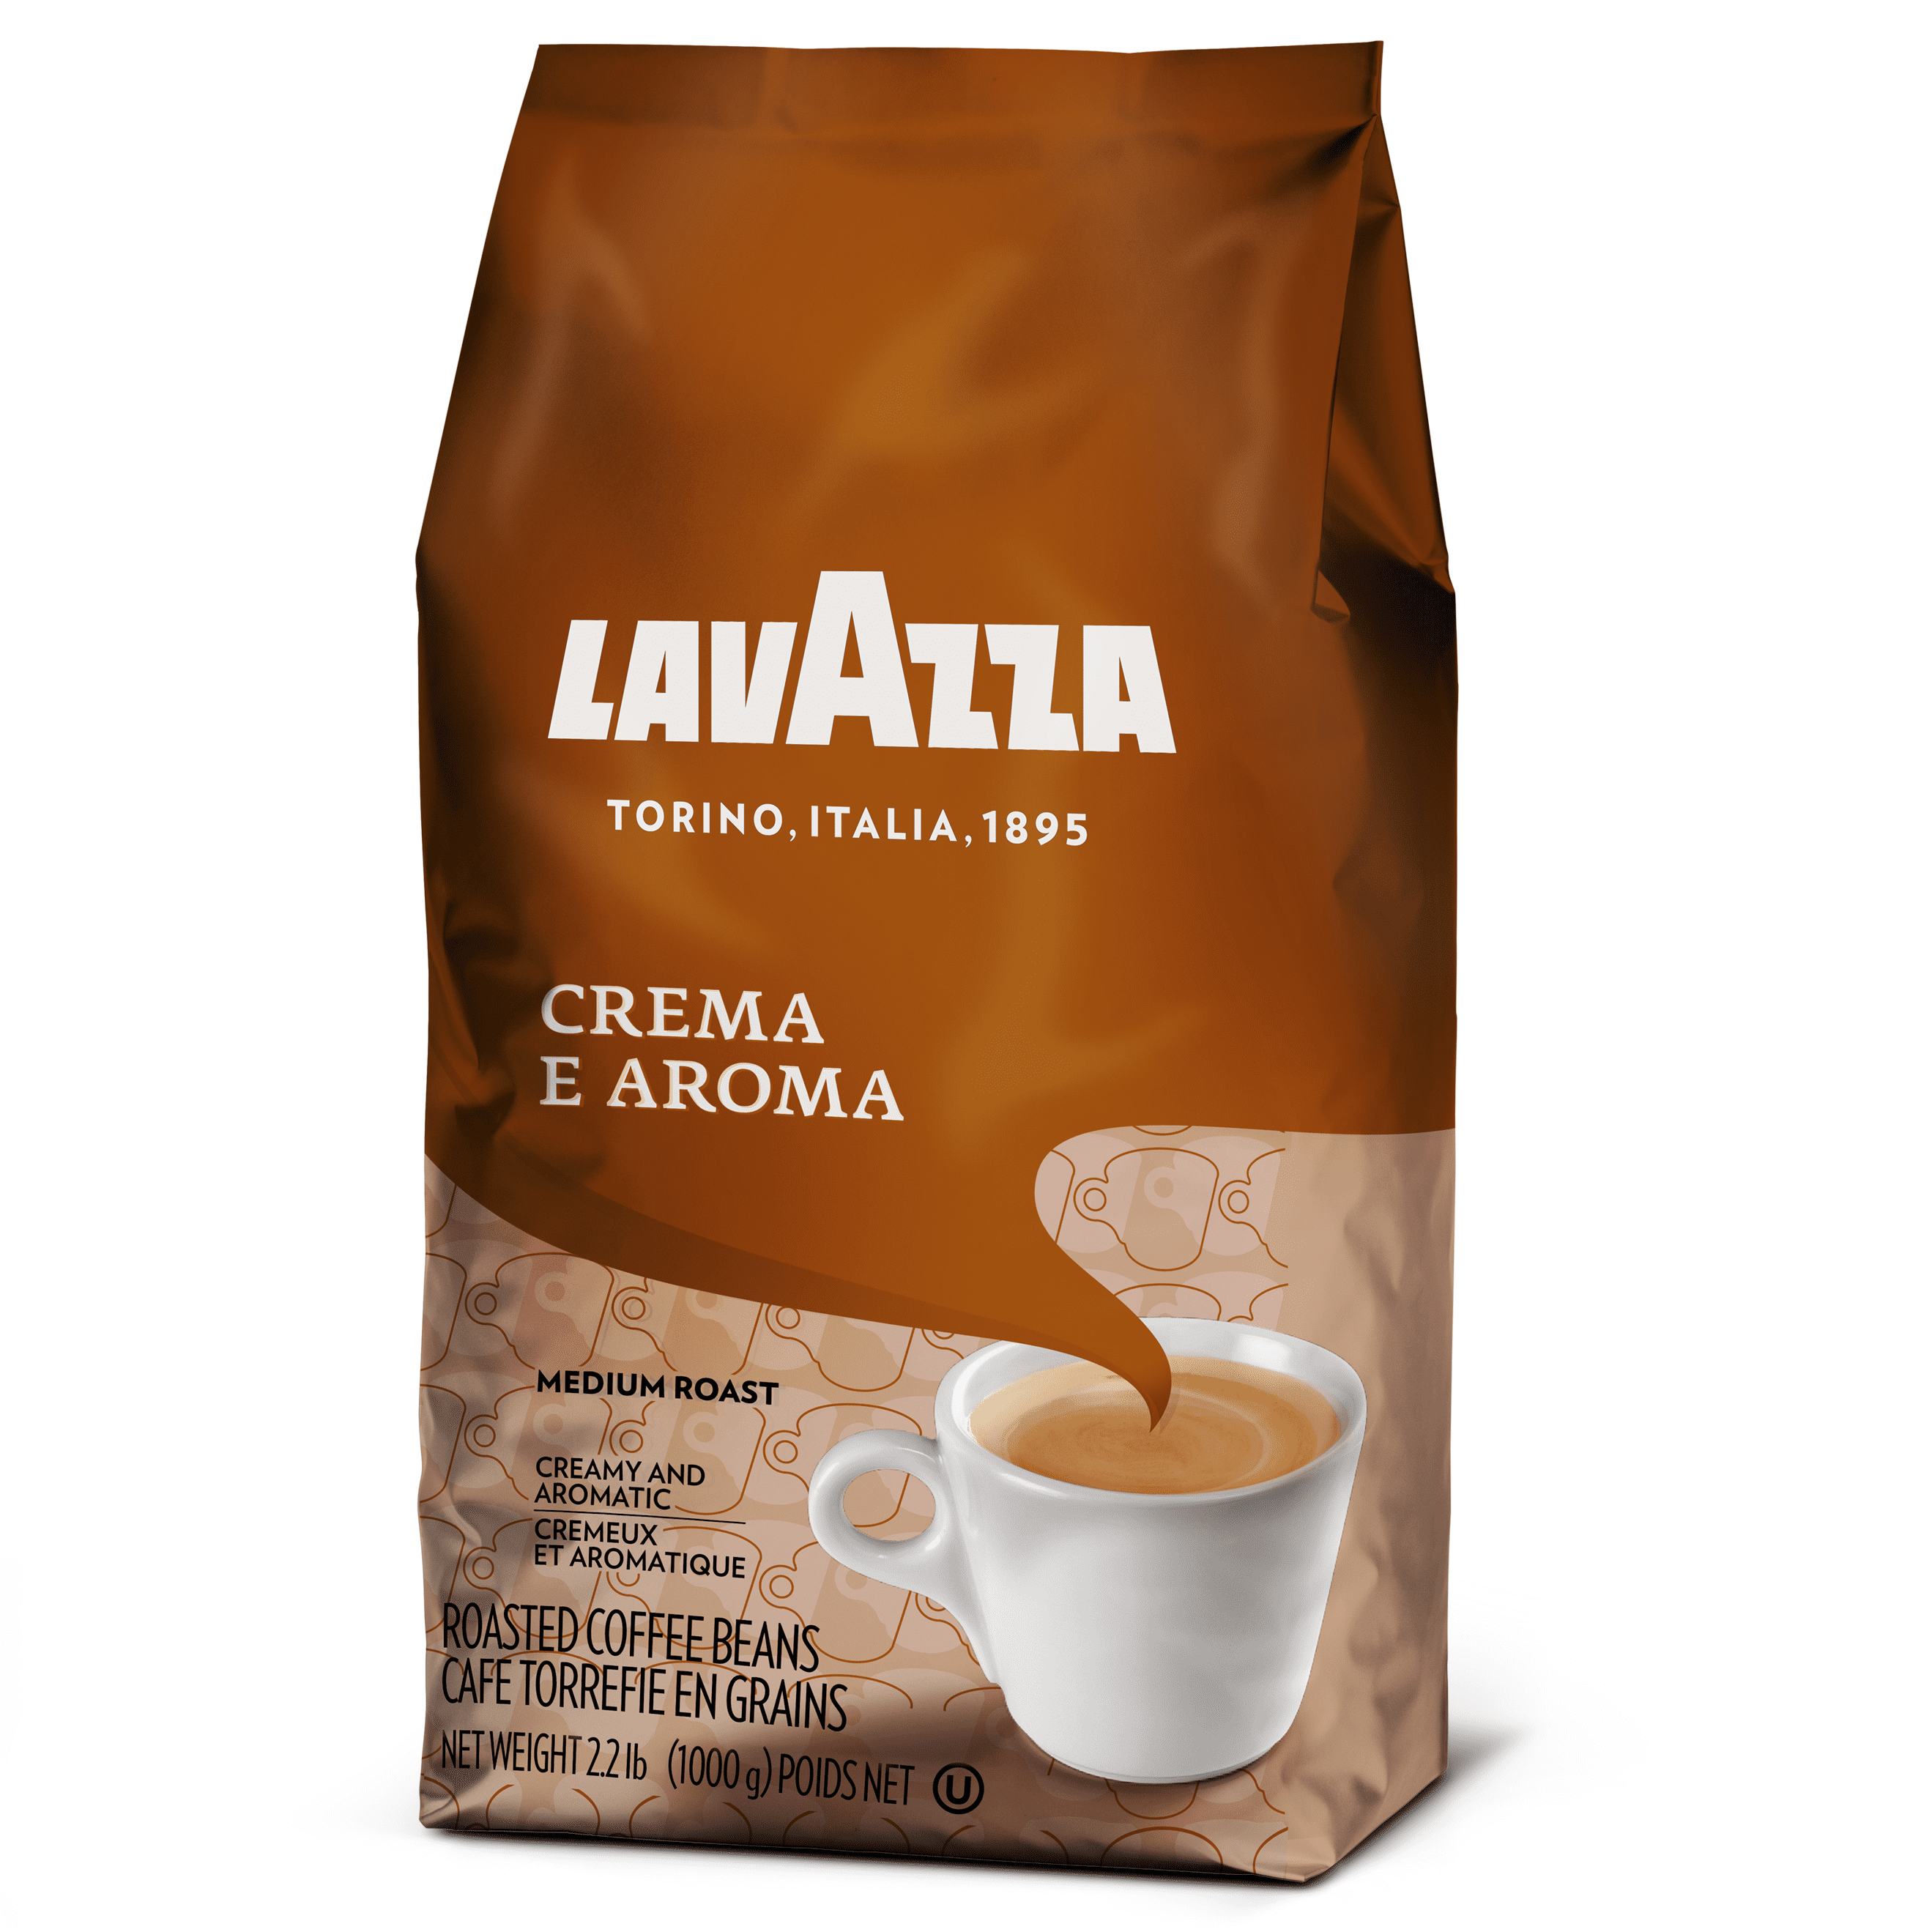 Lavazza Crema e Aroma Whole Bean Coffee Blend, Medium Roast, 35.2 Ounce Bag